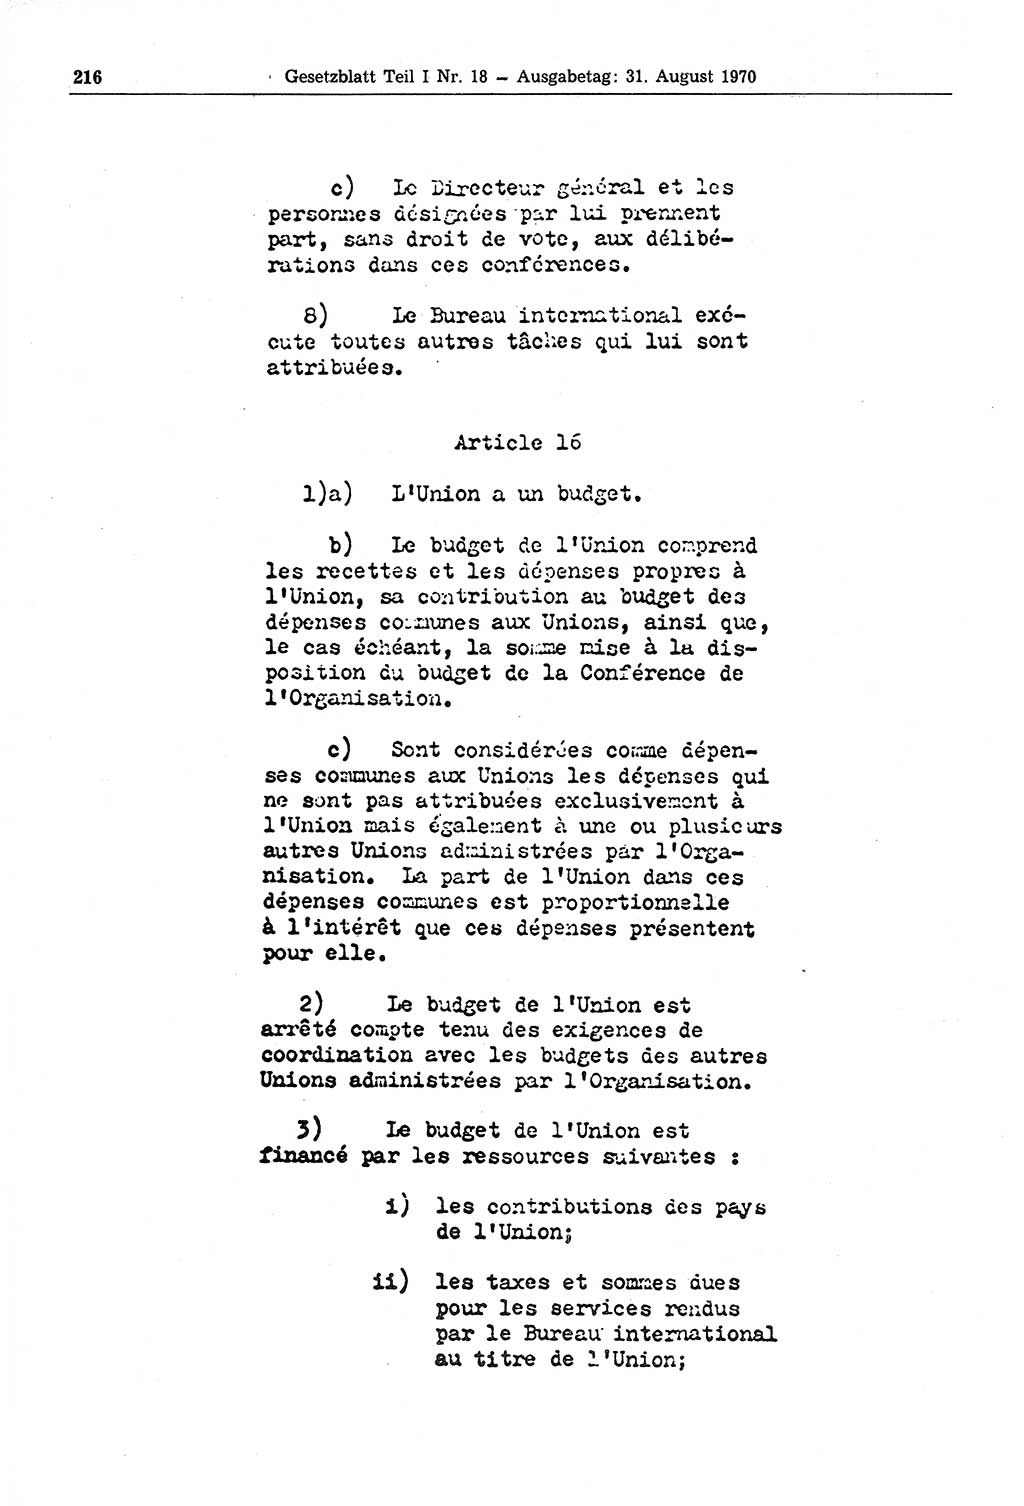 Gesetzblatt (GBl.) der Deutschen Demokratischen Republik (DDR) Teil Ⅰ 1970, Seite 216 (GBl. DDR Ⅰ 1970, S. 216)